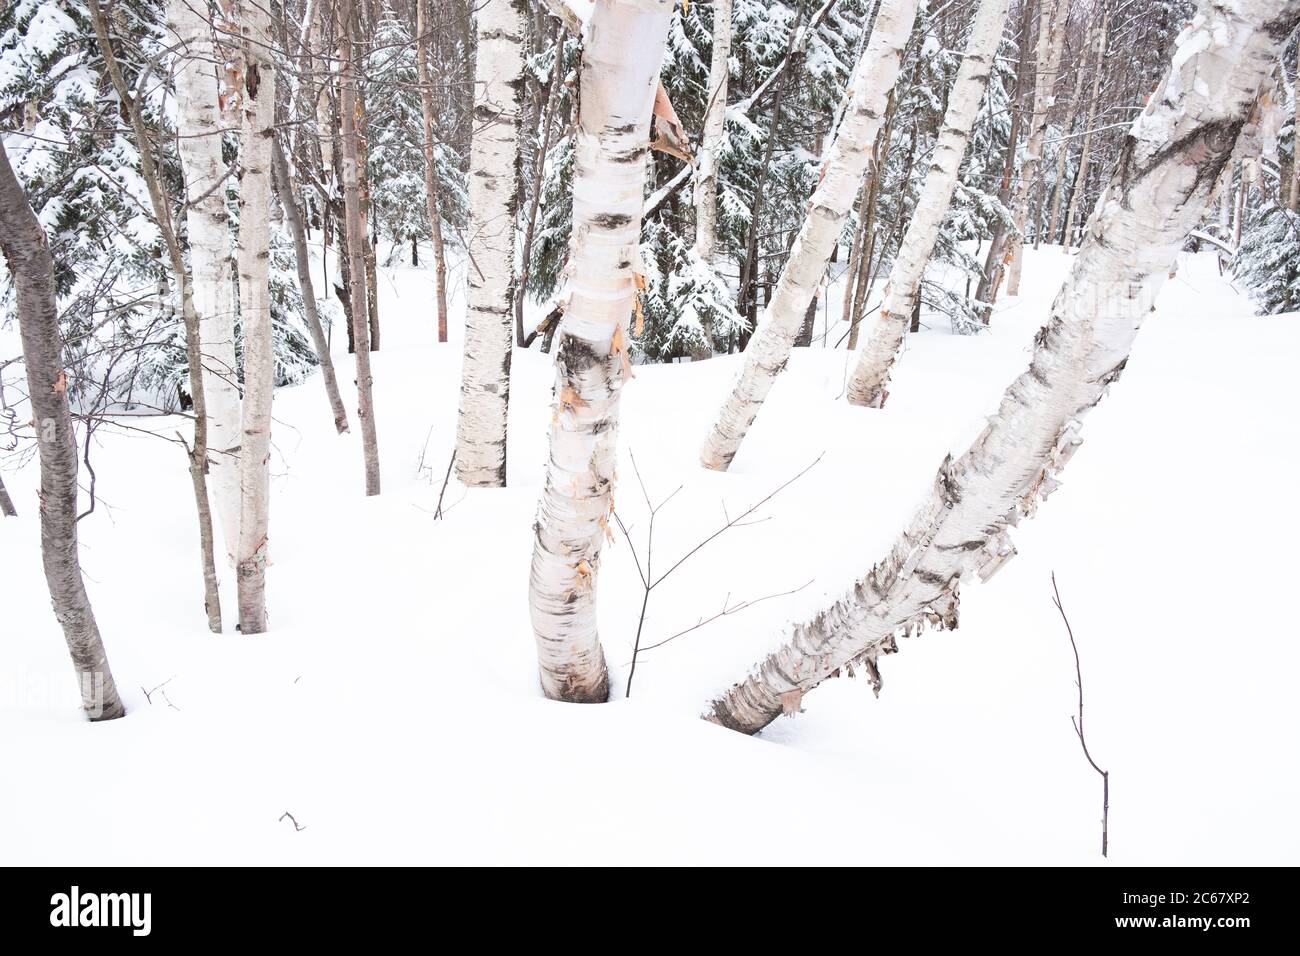 Weiße Birken im Schnee, Trapp Family Lodge Langlaufzentrum, Stowe, VT, USA. Stockfoto